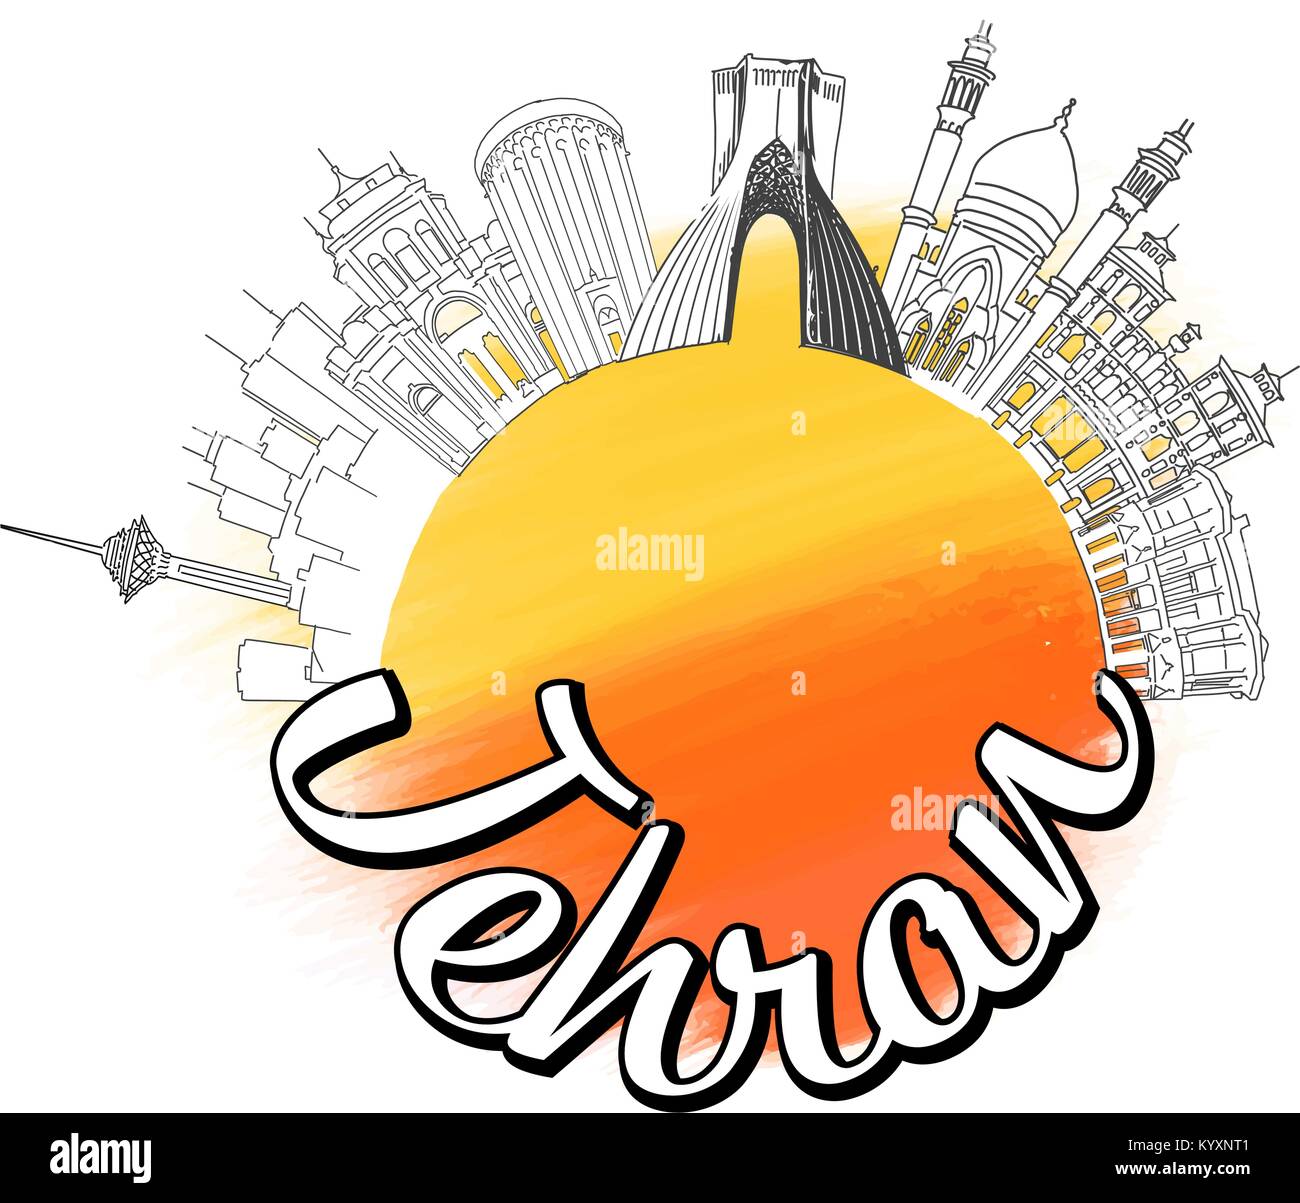 Tehran logo viaggio sketch. Skyline illustrazione vettoriale con acquarello e sullo sfondo di un refuso. Illustrazione Vettoriale